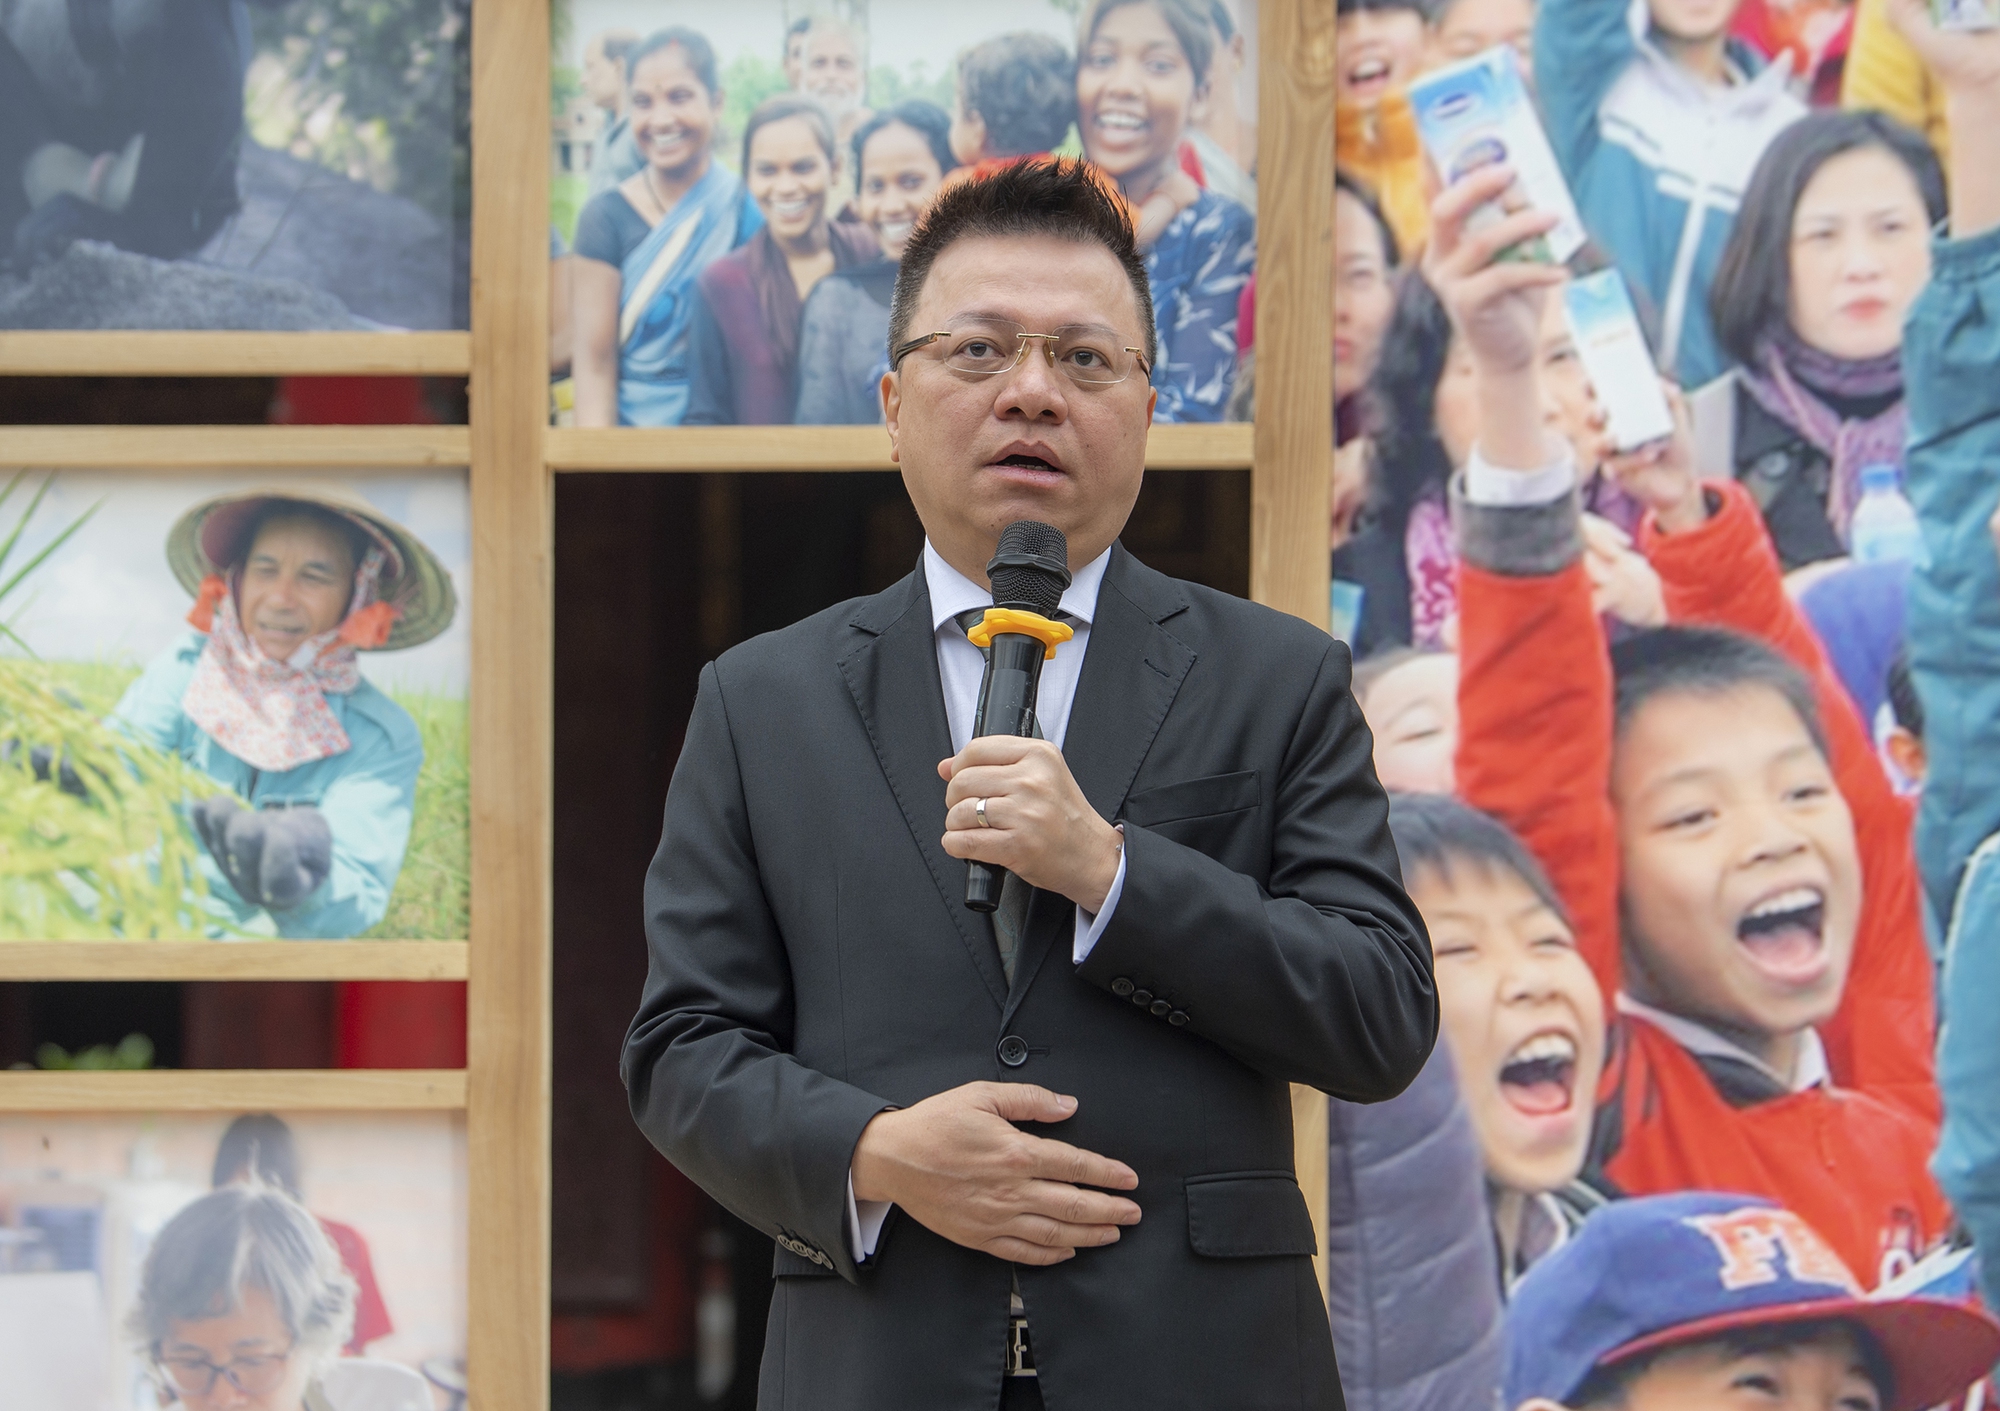 Ngắm các tác phẩm trưng bày tại Triển lãm Hành động vì cộng đồng - sự kiện đặc biệt, lần đầu tiên ở Việt Nam - Ảnh 7.